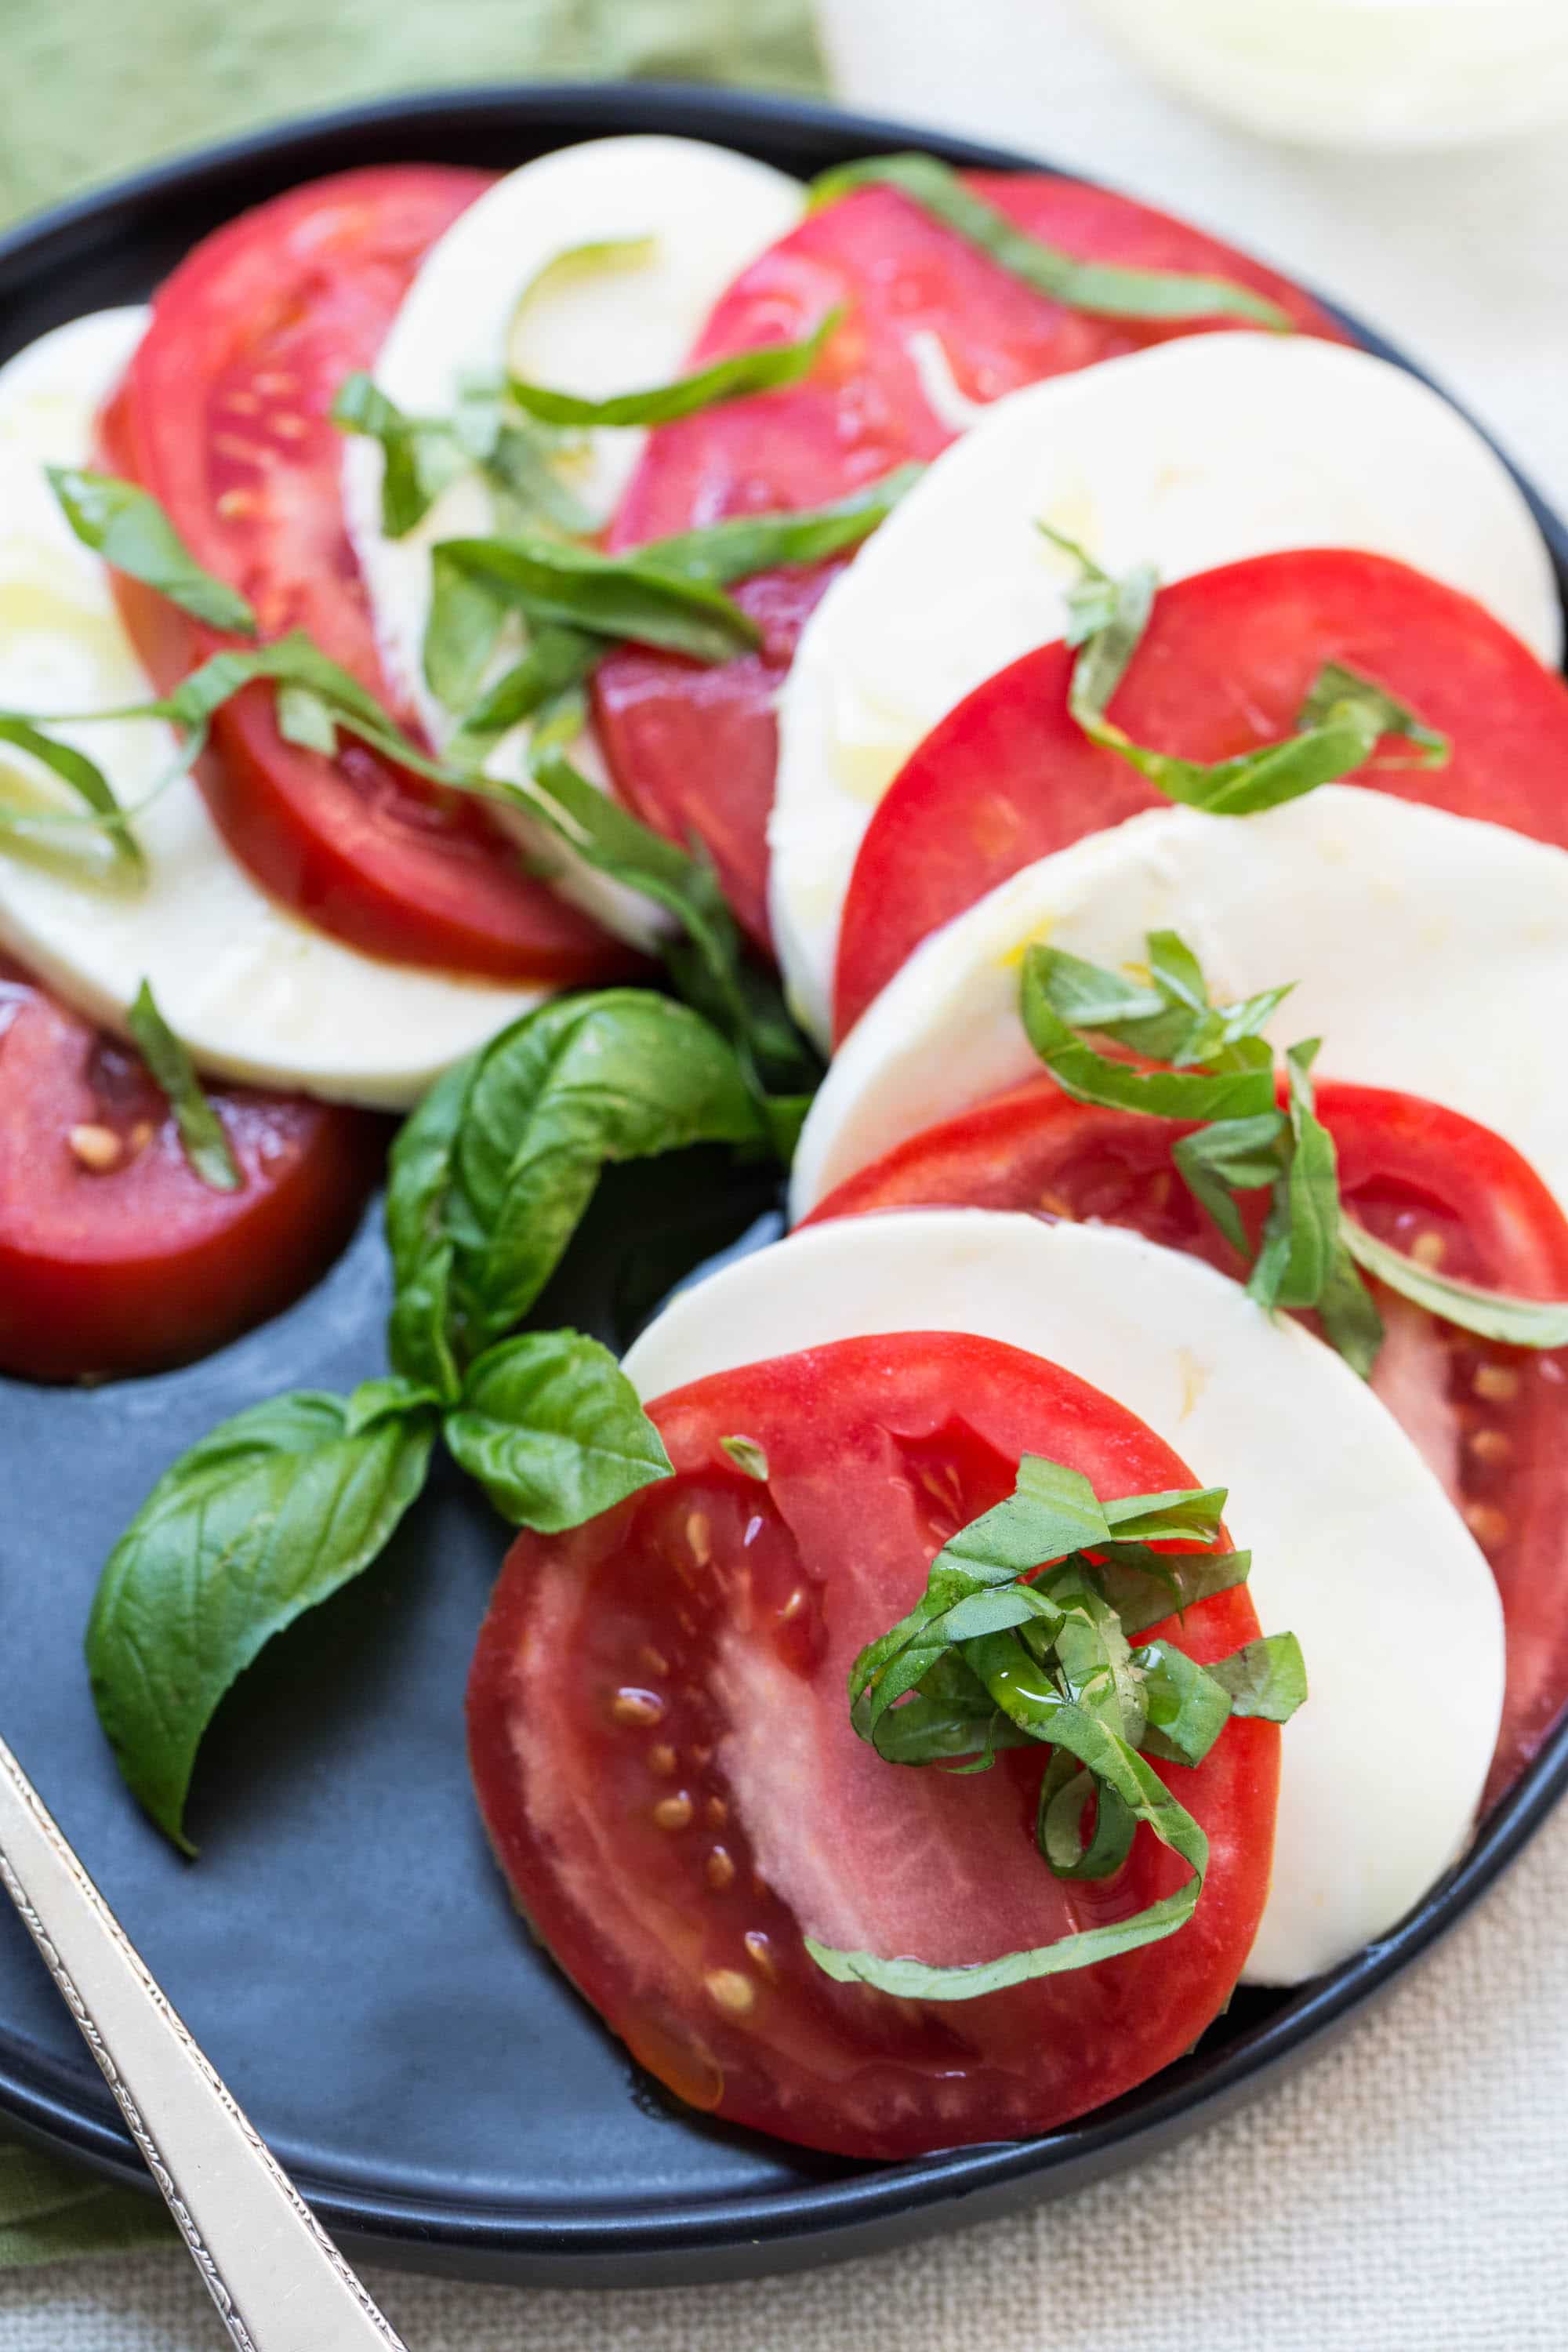 Tomato and Mozzarella Caprese Salad on a black plate.